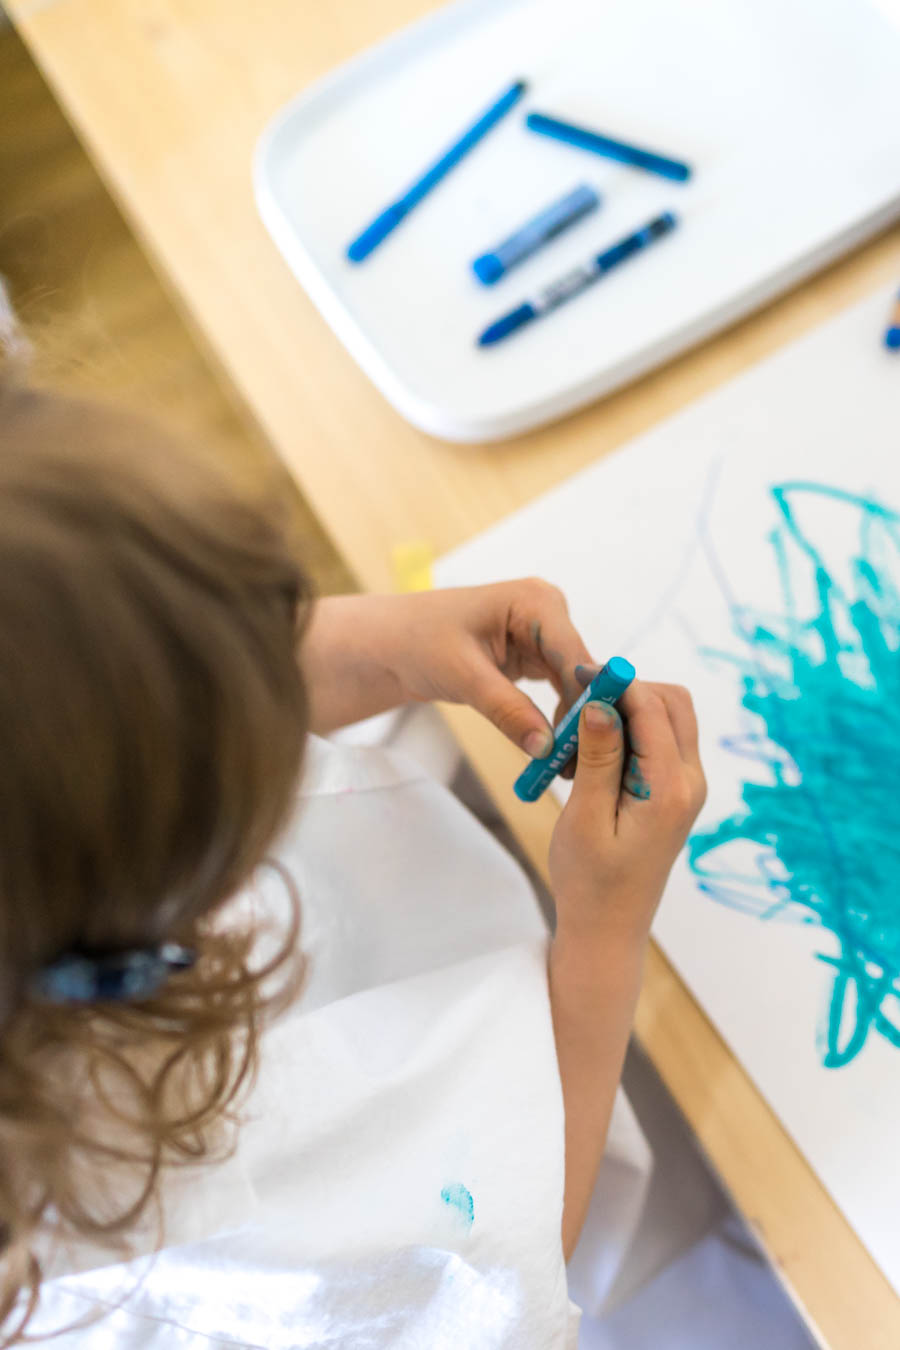 Basteln mit Kleinkindern: Eine Anleitung für Eltern. Wir zeigen euch, eine einfache Idee der „kreativen Einladungen“. Dabei können Kinder ohne Erwartungsdruck oder Vorgaben basteln und malen. Und spielerisch Farben, Formen und Konsistenzen entdecken. Einfache Bastelideen für Kinder, in der Kita, Kindergarten und zu Hause. Basteln mit Kindern findet ihr auf dem Blog: www.chezmamapoule.com #malspiel #unerzogen #montessori #spielideen #attachmentparenting #freiesmalen #freiesbasteln 